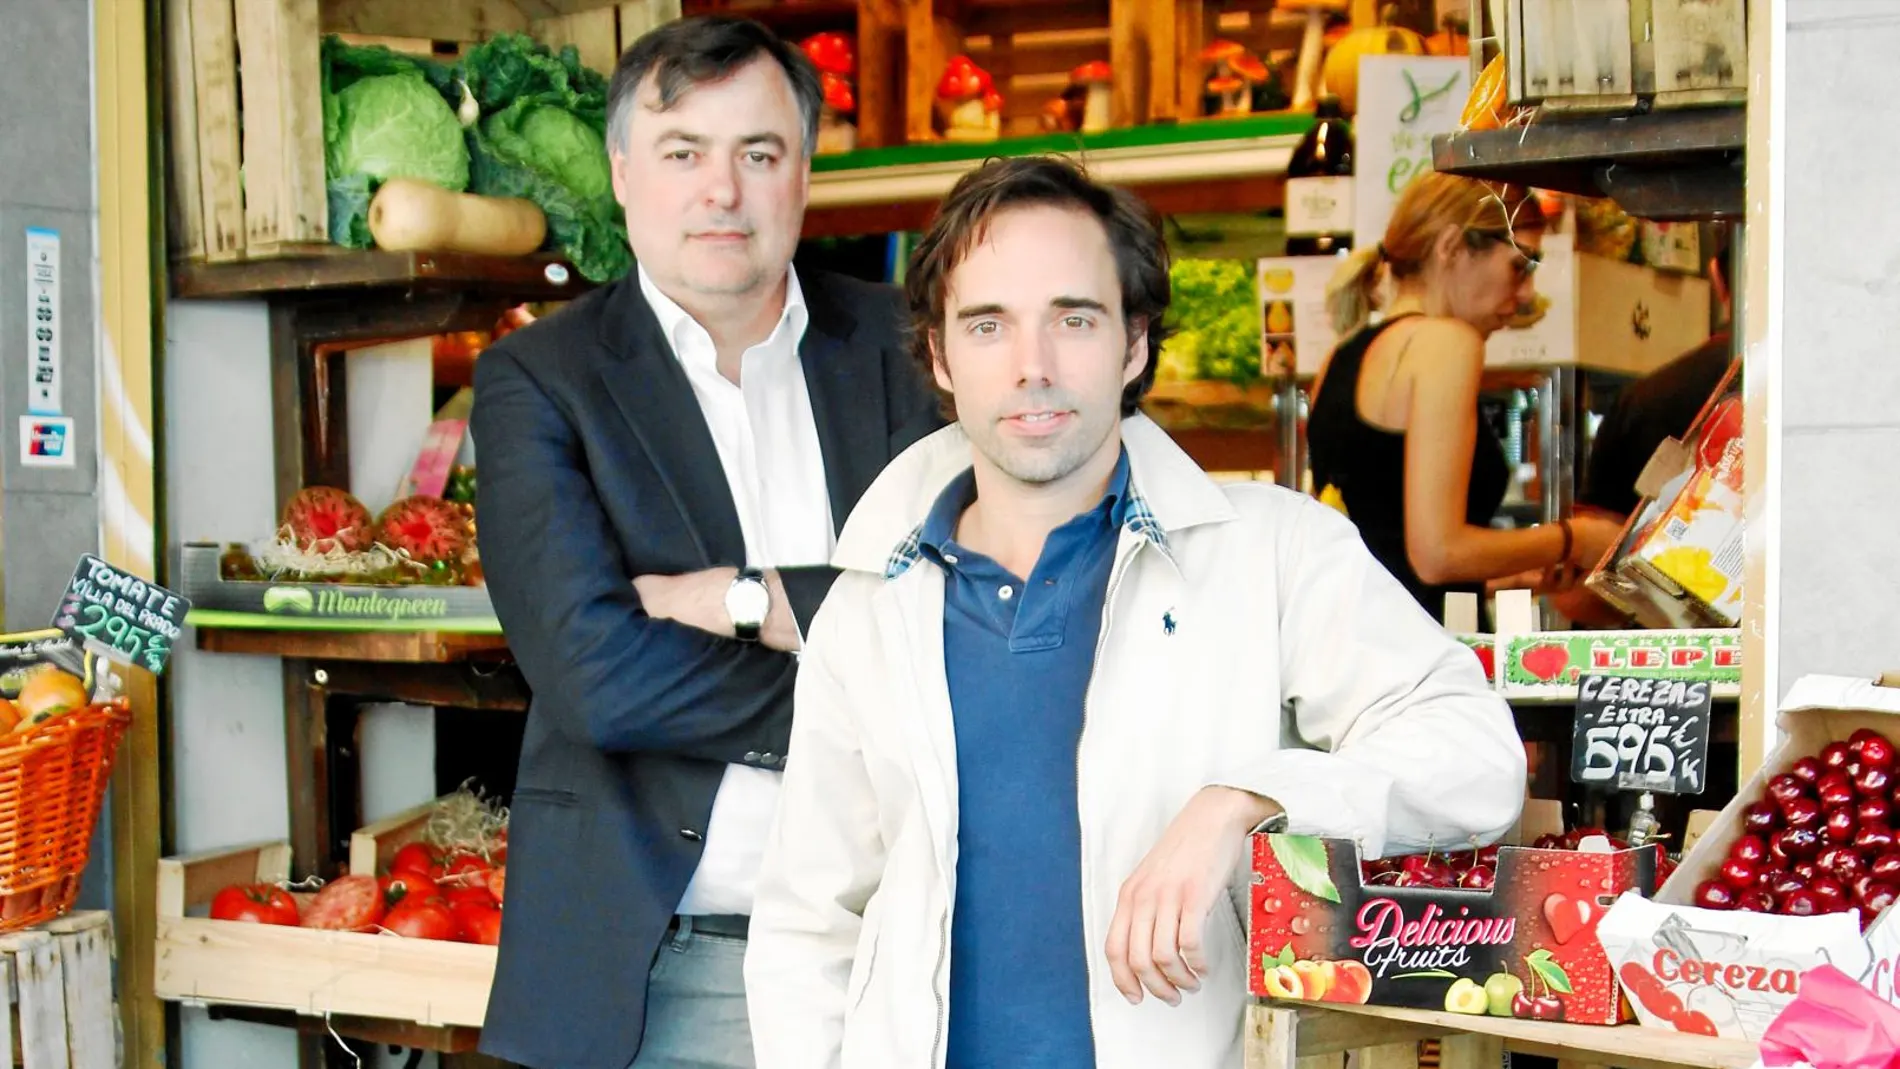 Carlos Martín y Eliseo Haro en la Frutería San Miguel, en Conde Duque, uno de los establecimientos de la red. Foto: Paula Jiménez